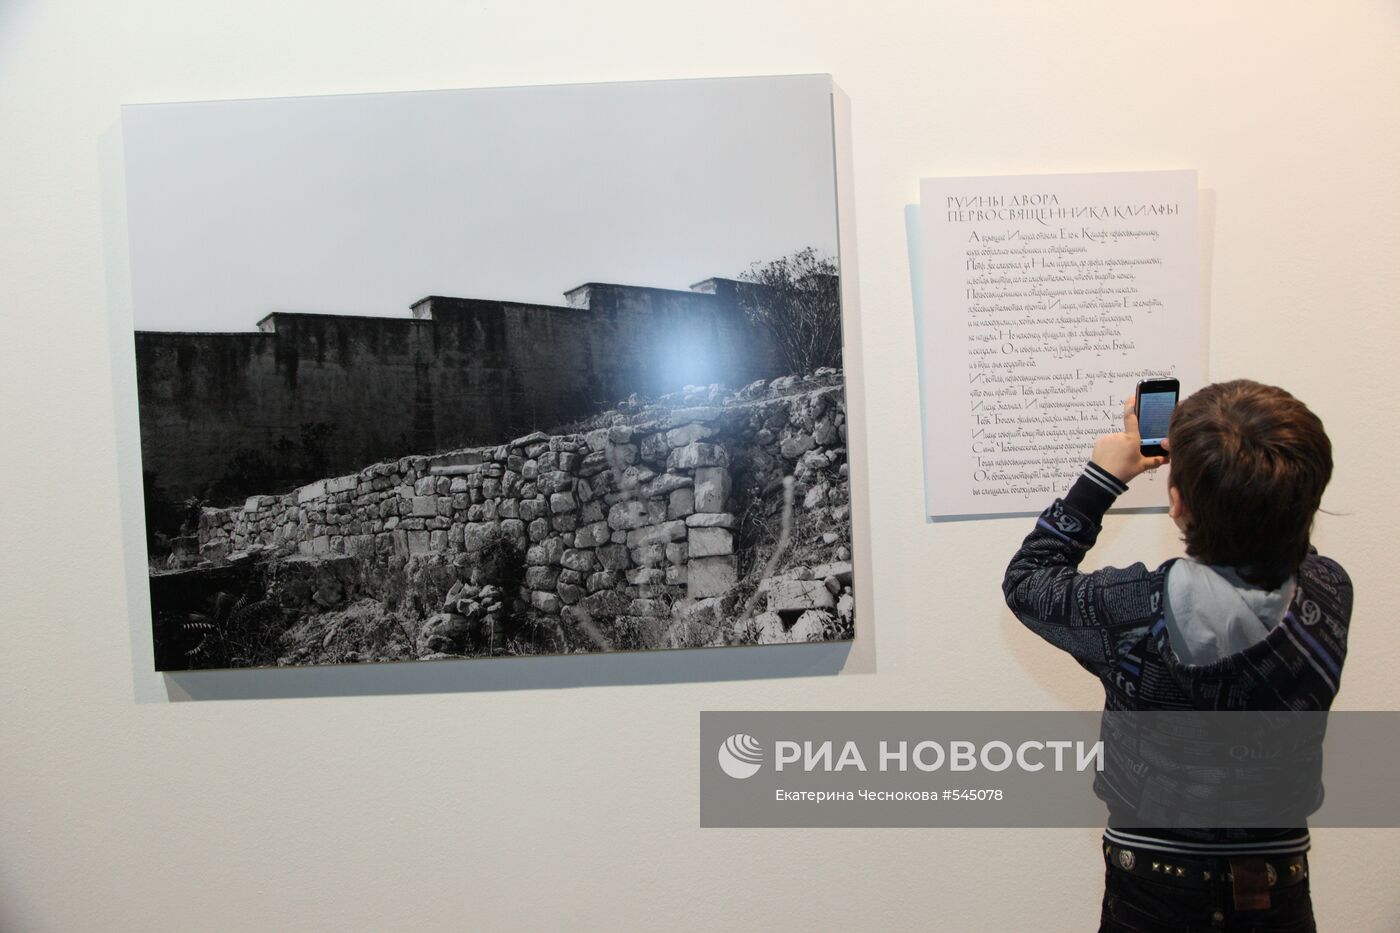 Открытие выставки фотографа Михаила Розанова "Служение"